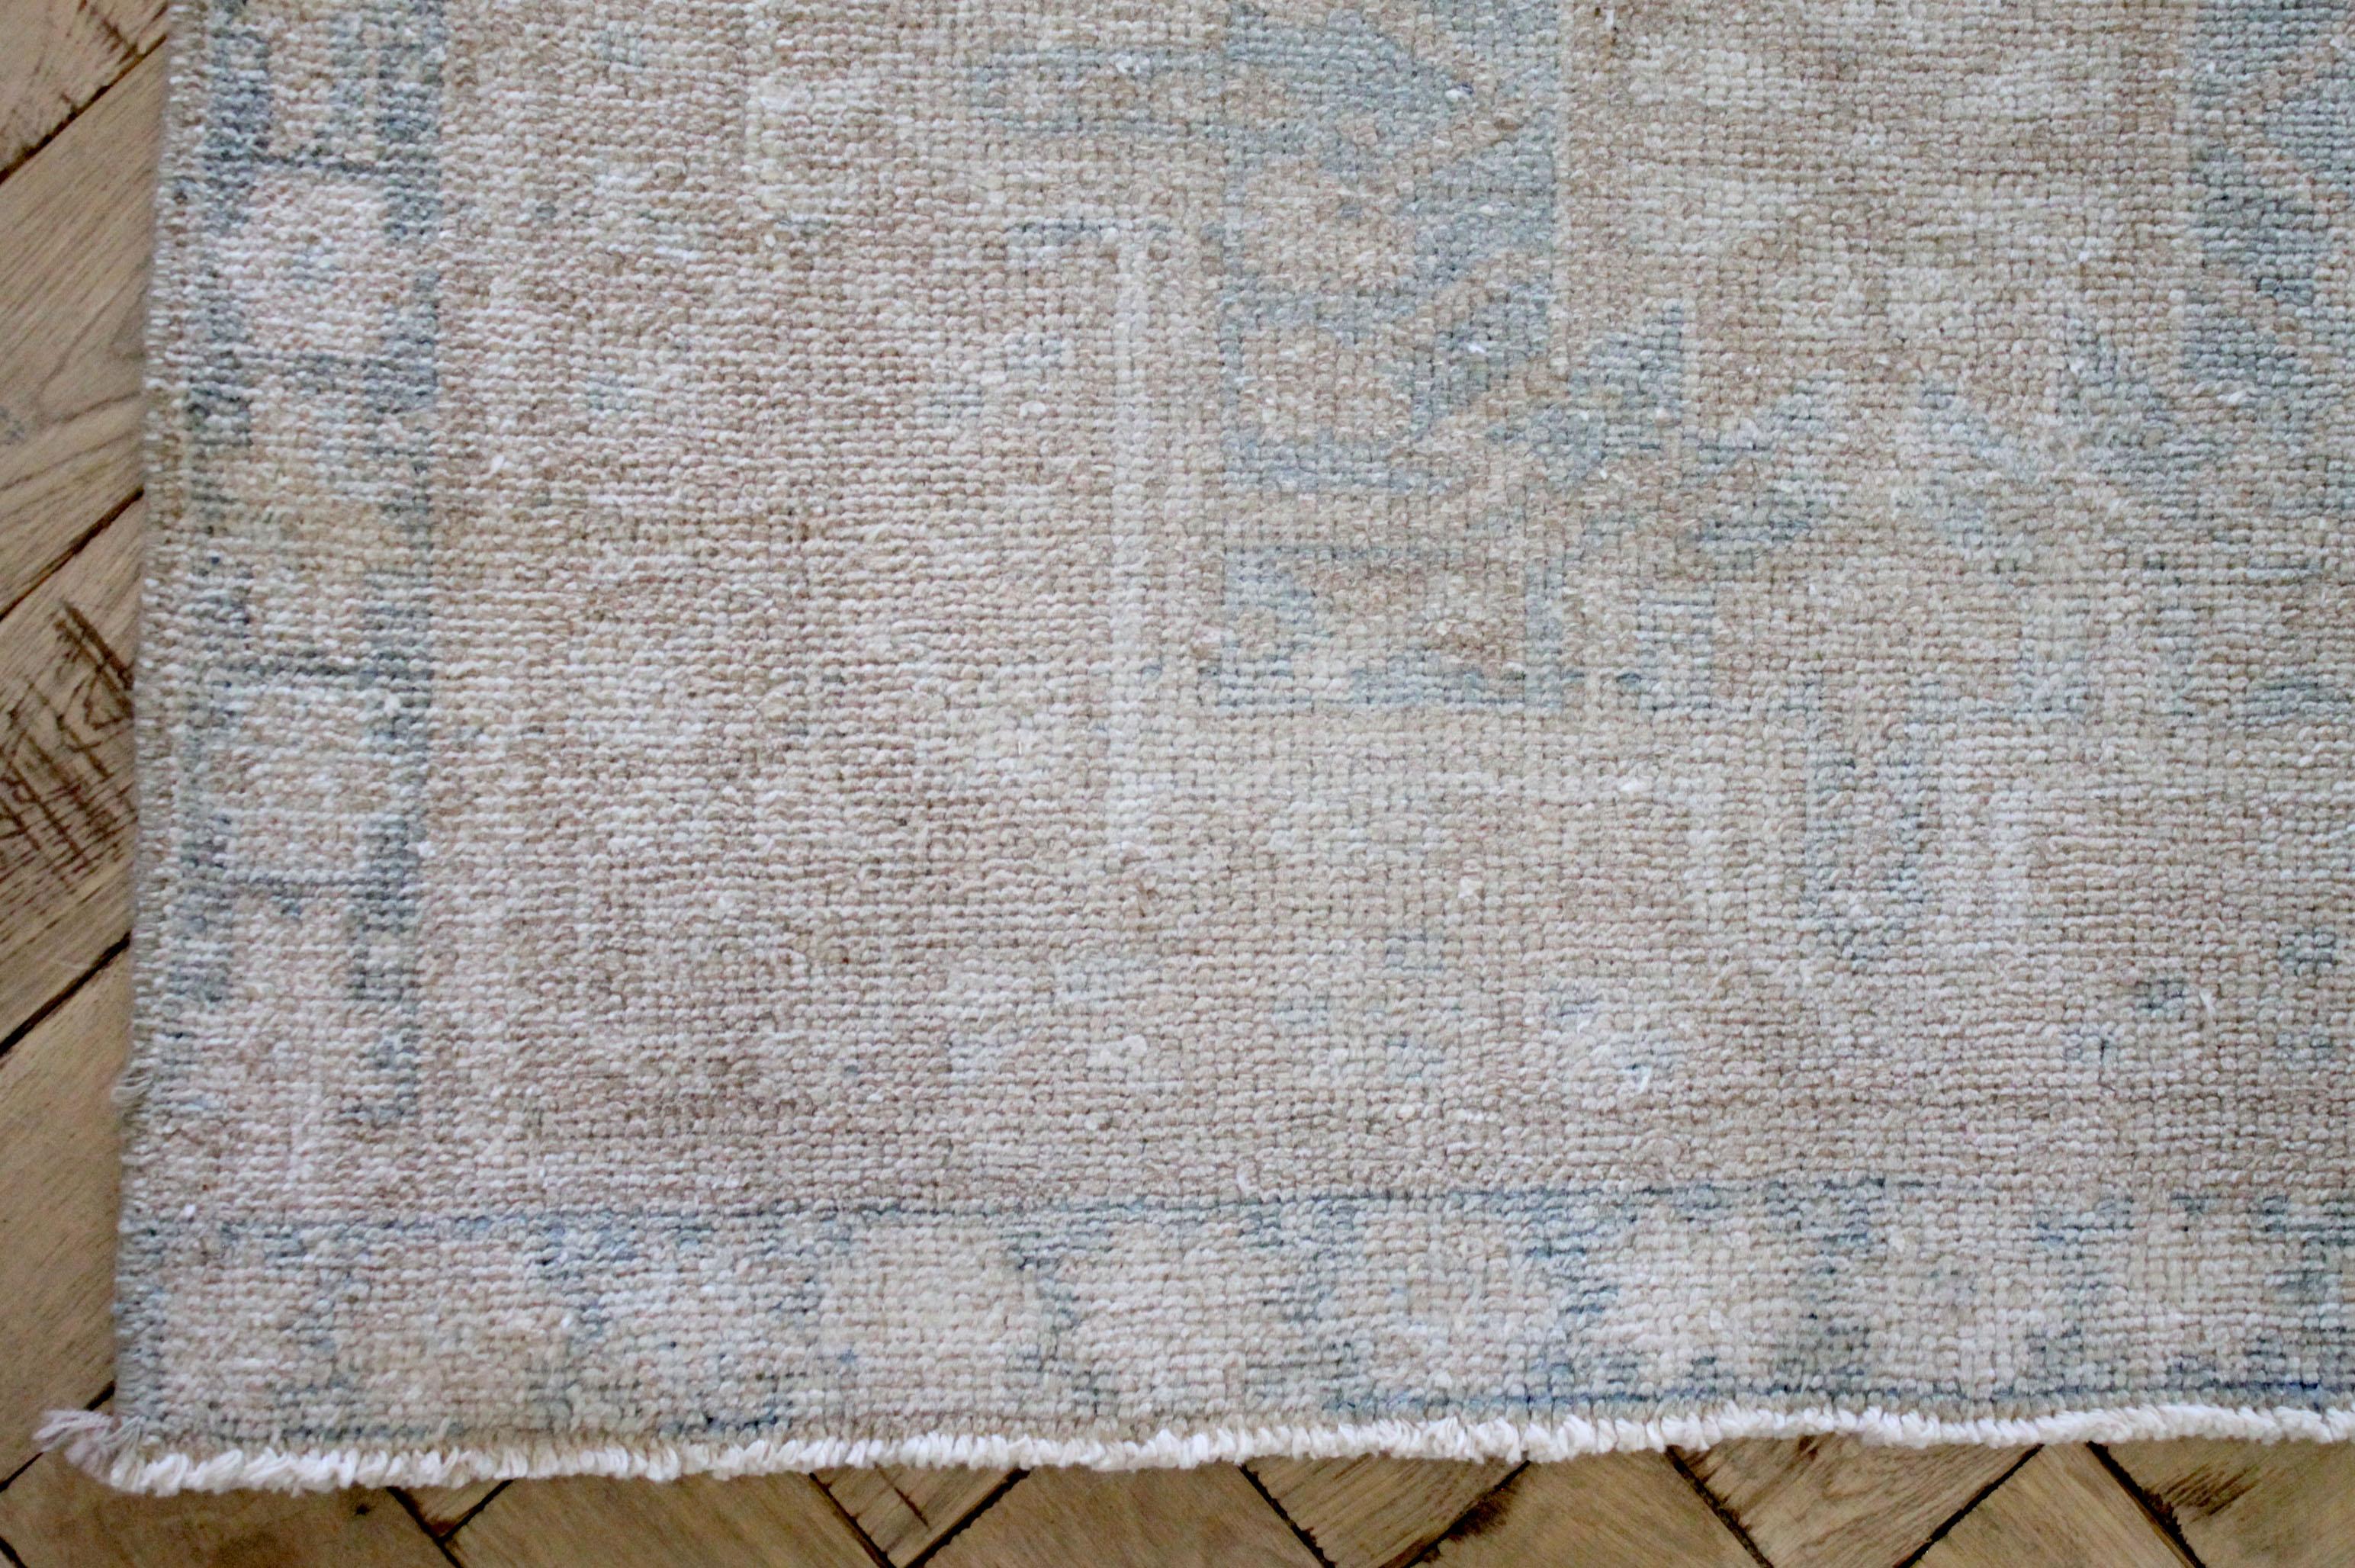 Schöner langer türkischer Vintage-Teppich in warmen Naturtönen mit sanften Blautönen.
Ideal für Küche, Flur oder Bad.
Maße: 2'7